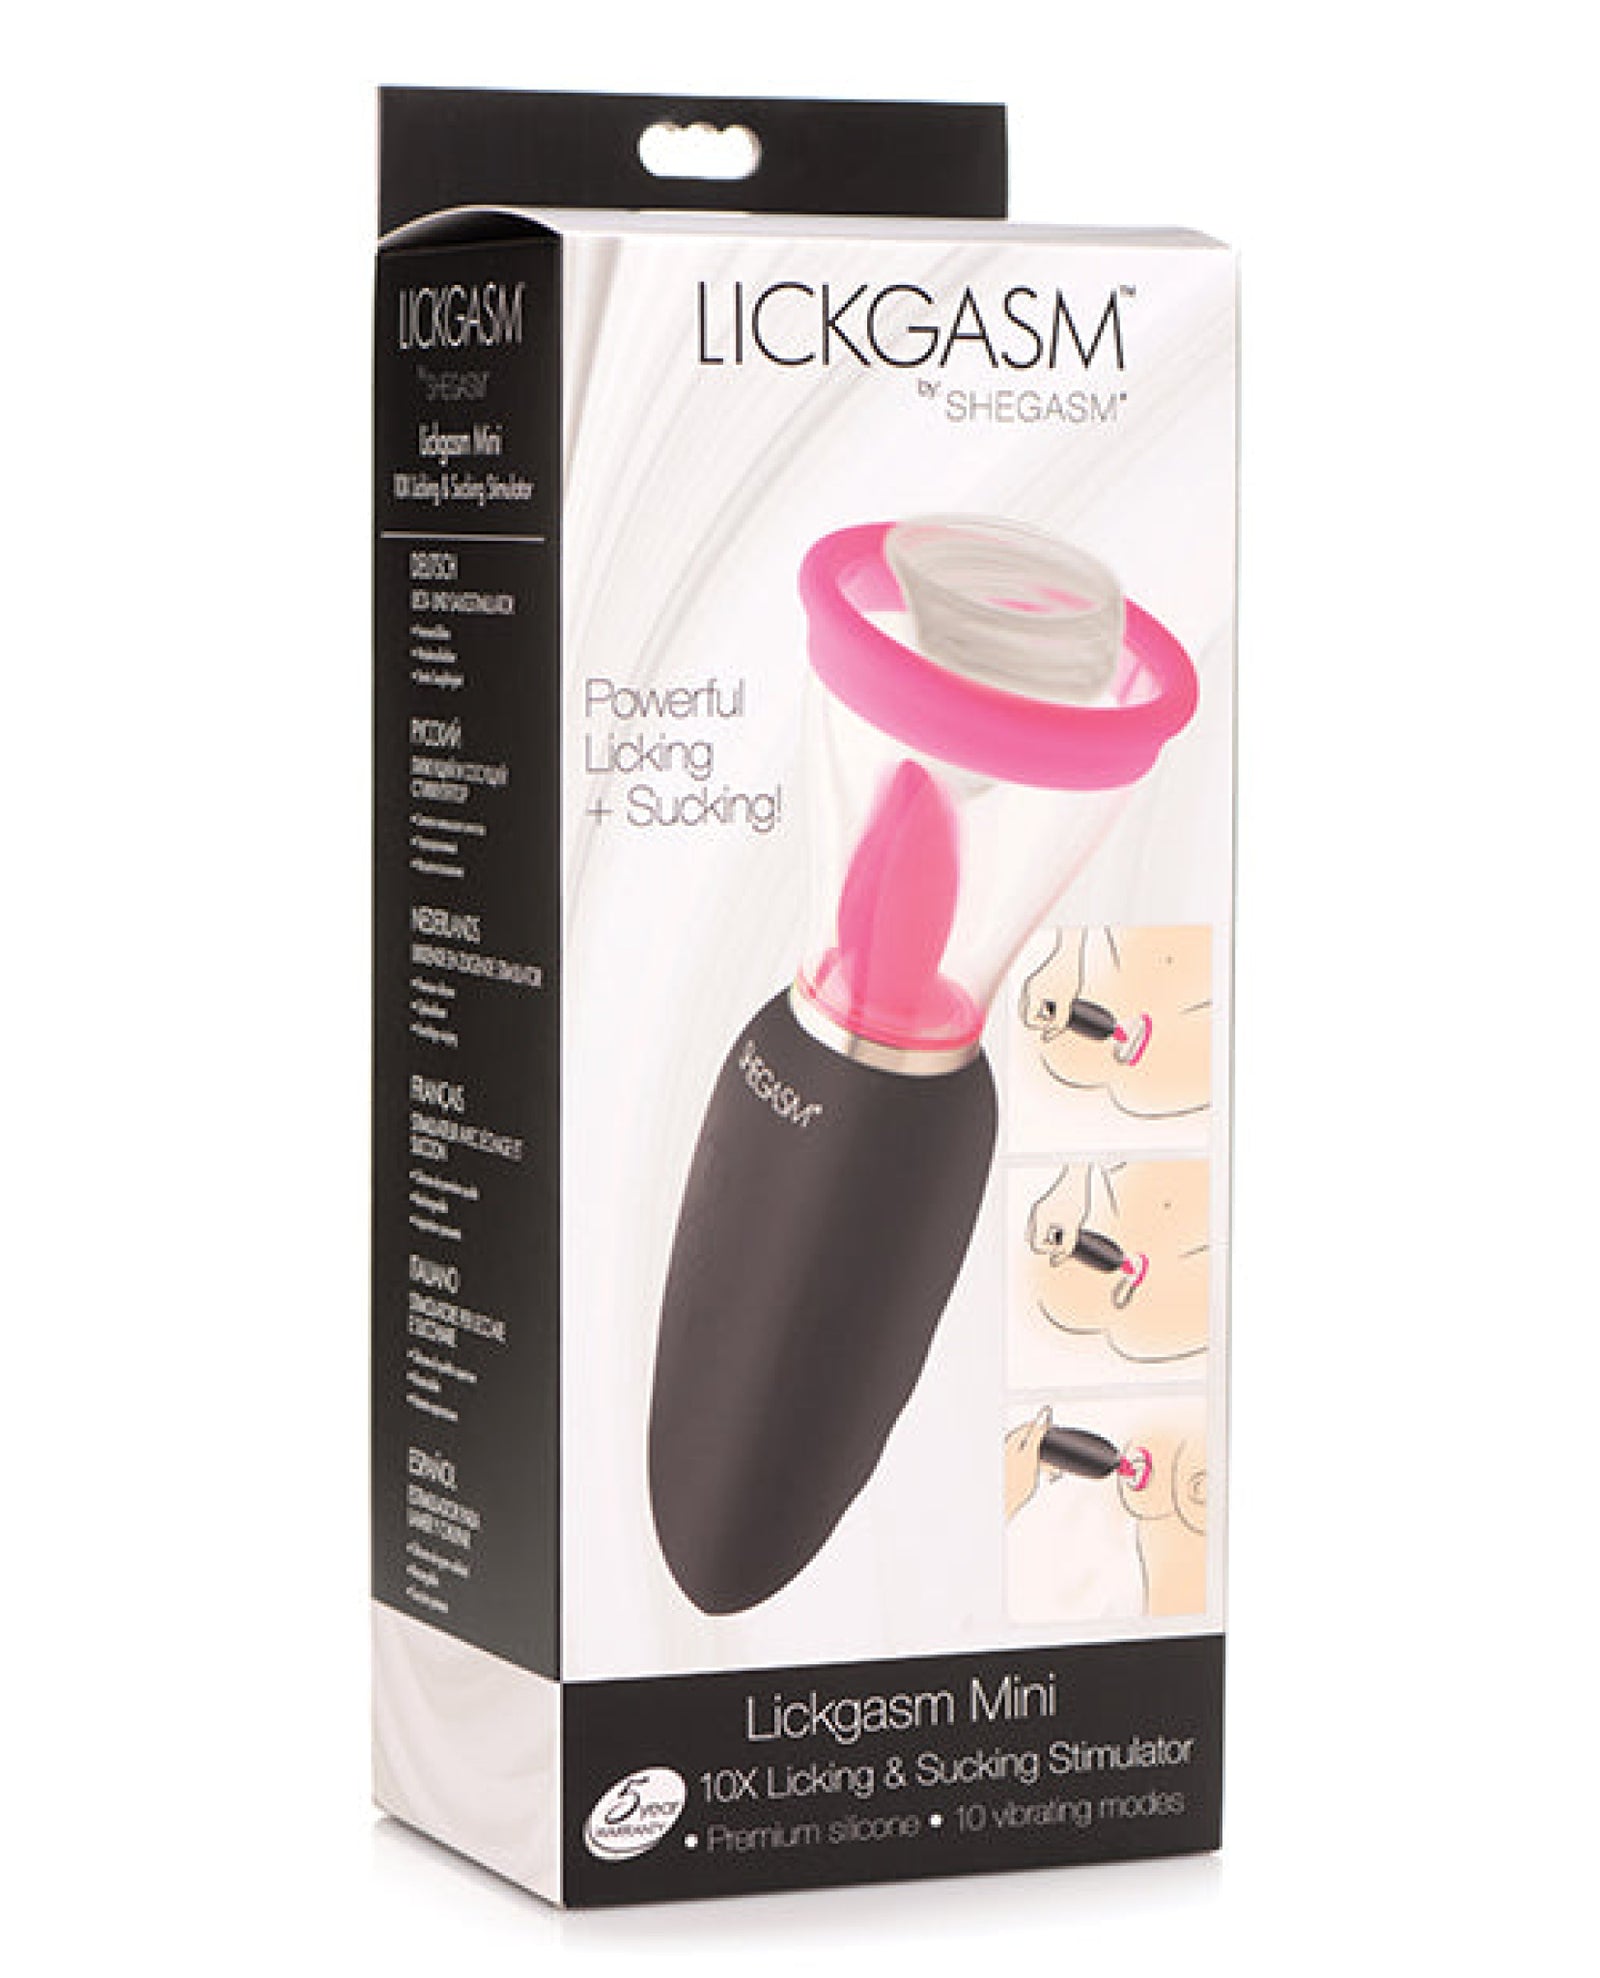 Inmi Shegasm Lickgasm Mini 10x Licking & Sucking Stimulator - Black-pink Inmi